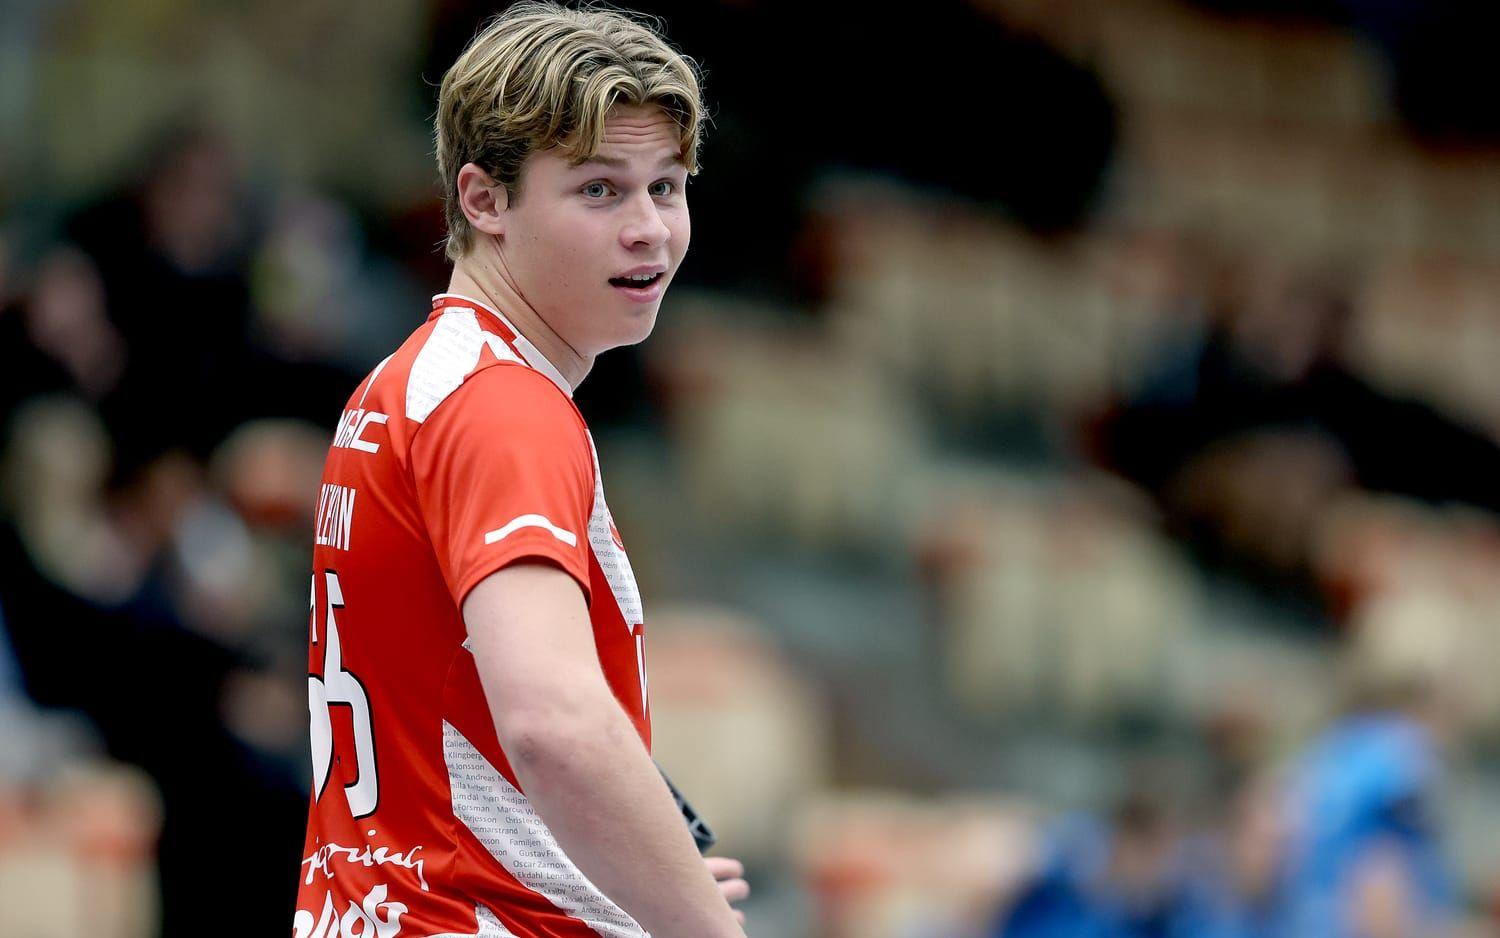 Pixbos Daniel Kalentun ska ha ådragit sig en lättare hjärnskakning i matchen mot Jönköping och spås bli borta ett tag.